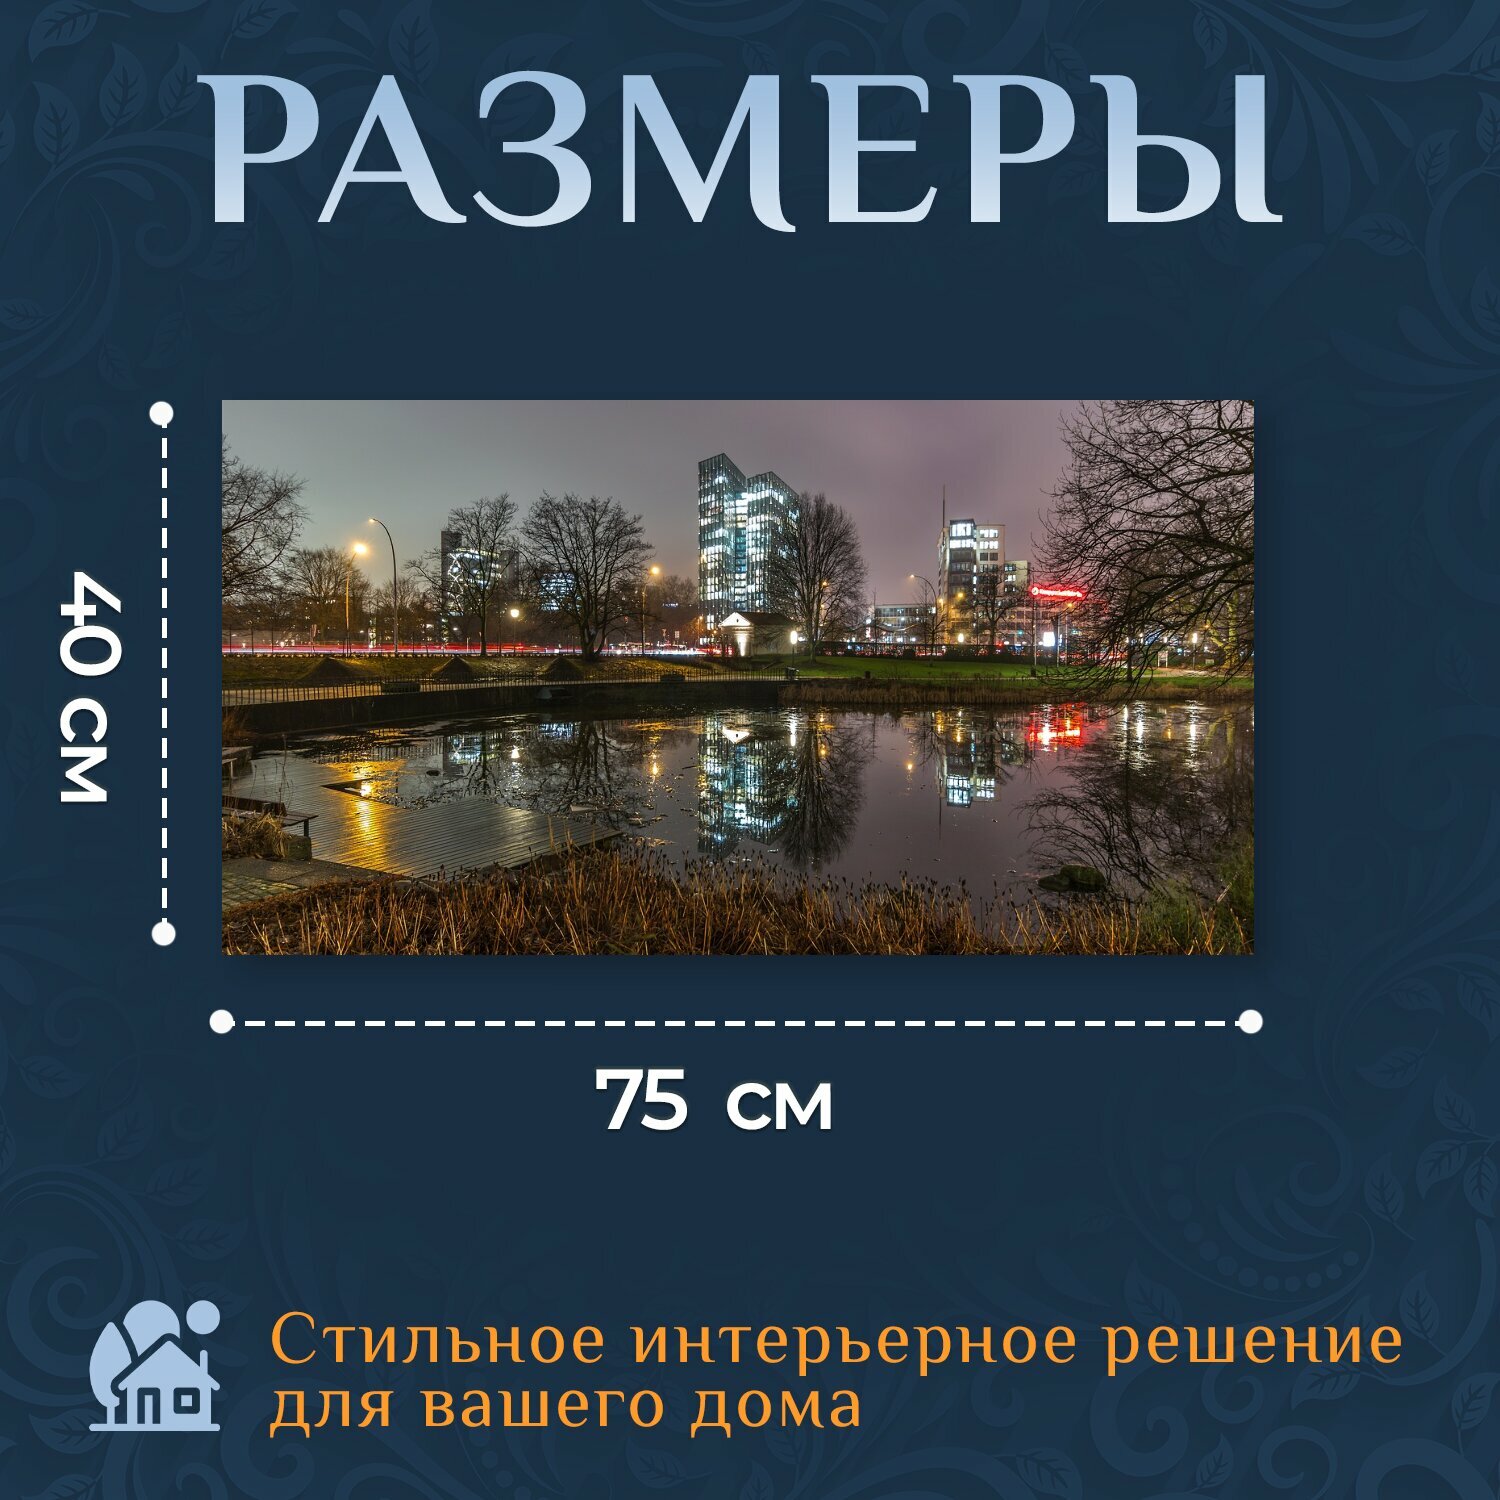 Картина на холсте "Город, городской ландшафт, панорама" на подрамнике 75х40 см. для интерьера